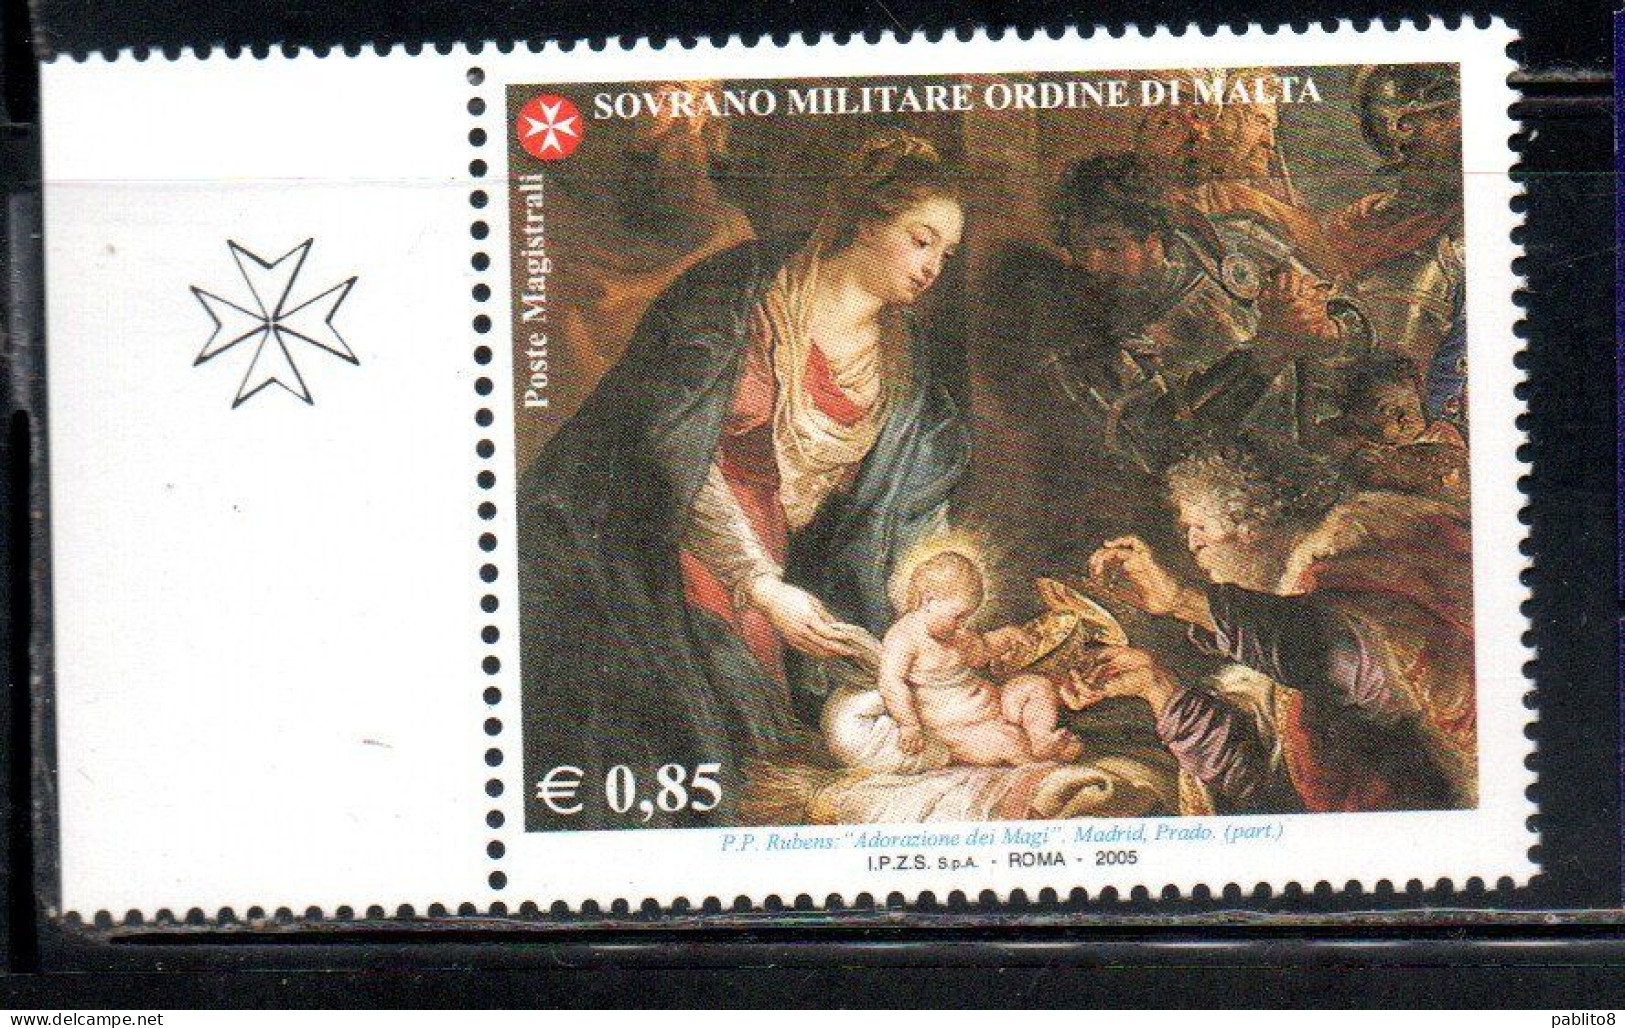 SMOM SOVRANO ORDINE MILITARE DI MALTA 2005 NATALE CHRISTMAS NOEL WEIHNACHTEN NAVIDAD 0,85€ MNH - Malte (Ordre De)